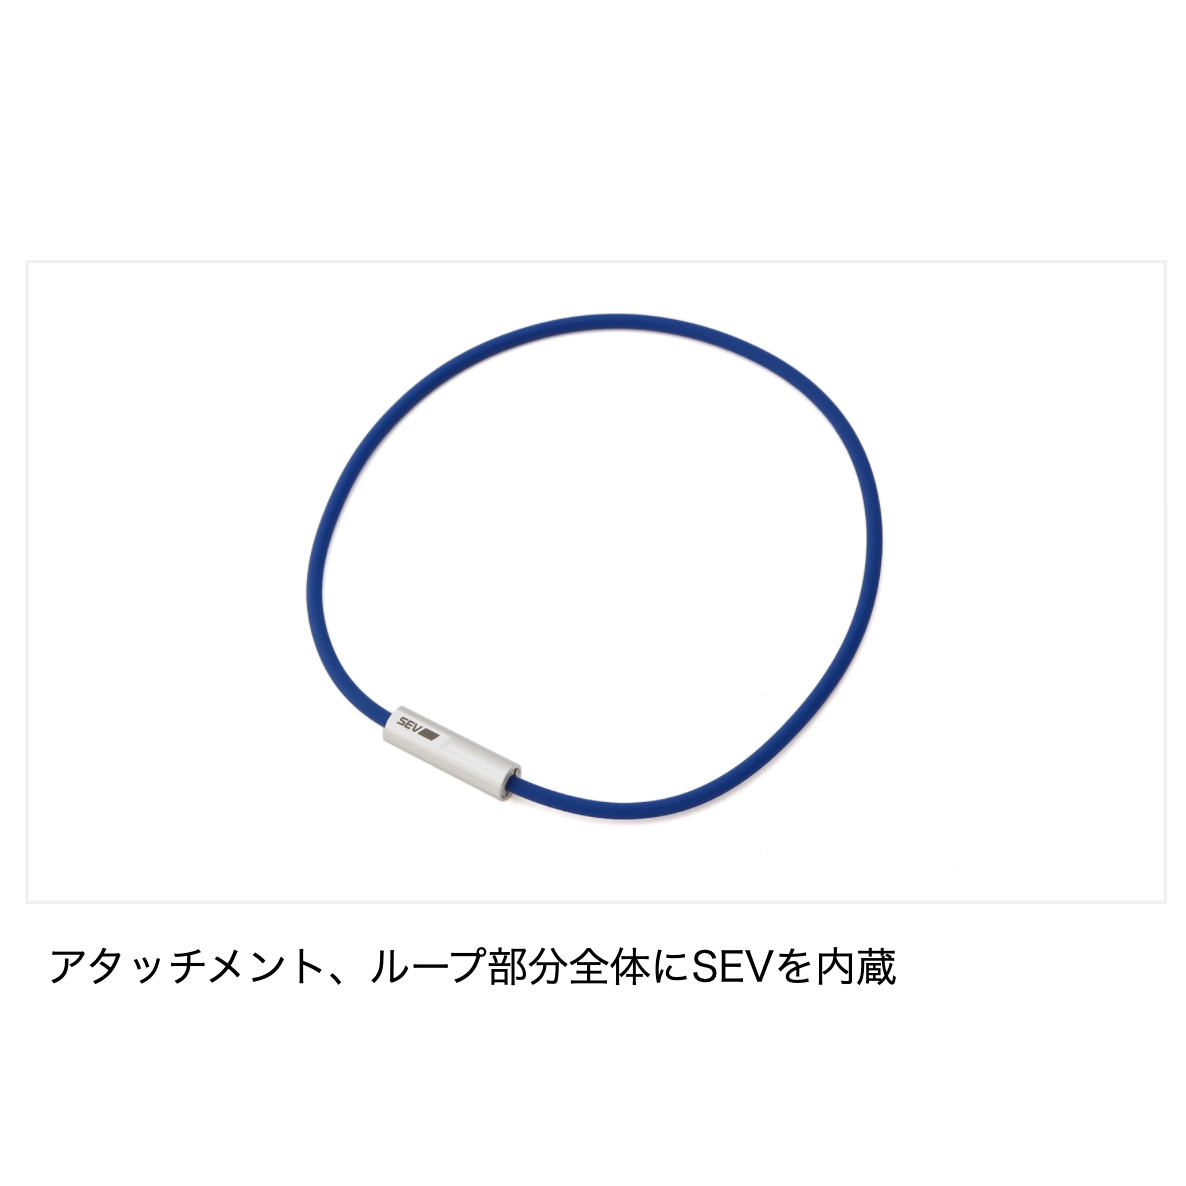 【専用】SEV ルーパー タイプM 48サイズ ネックレス